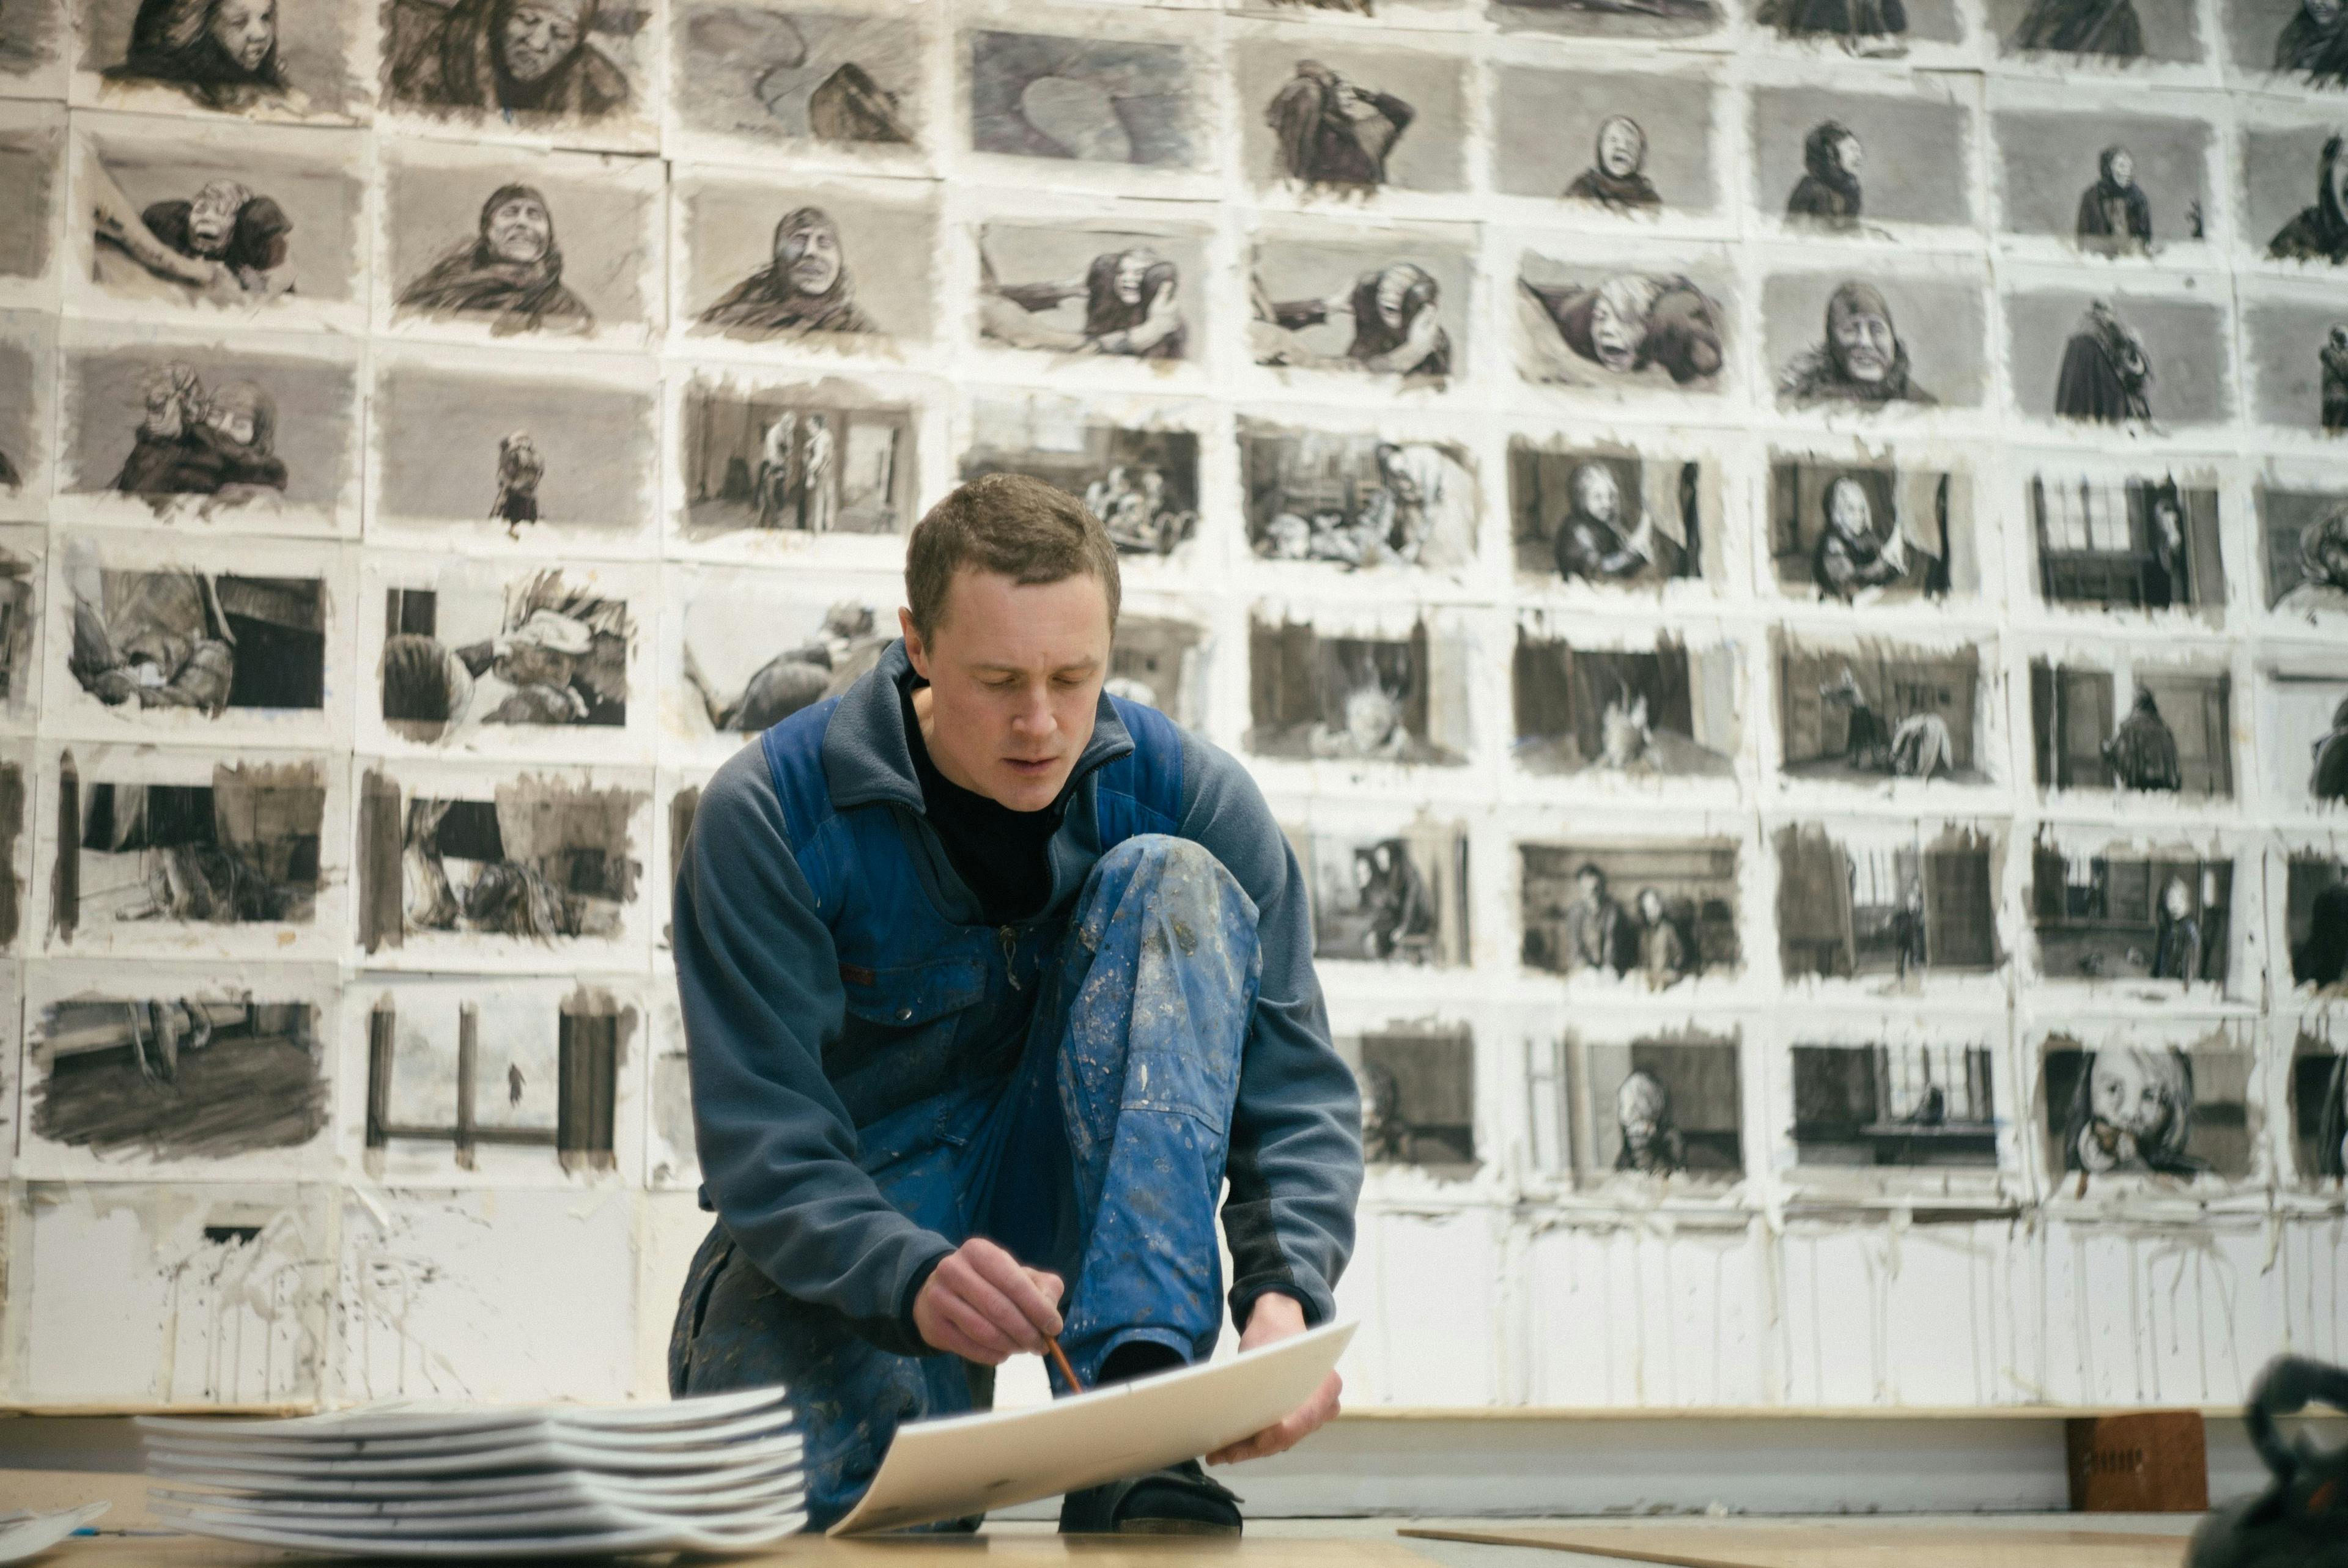 Picture of Knutte Wester kneeling in his studio